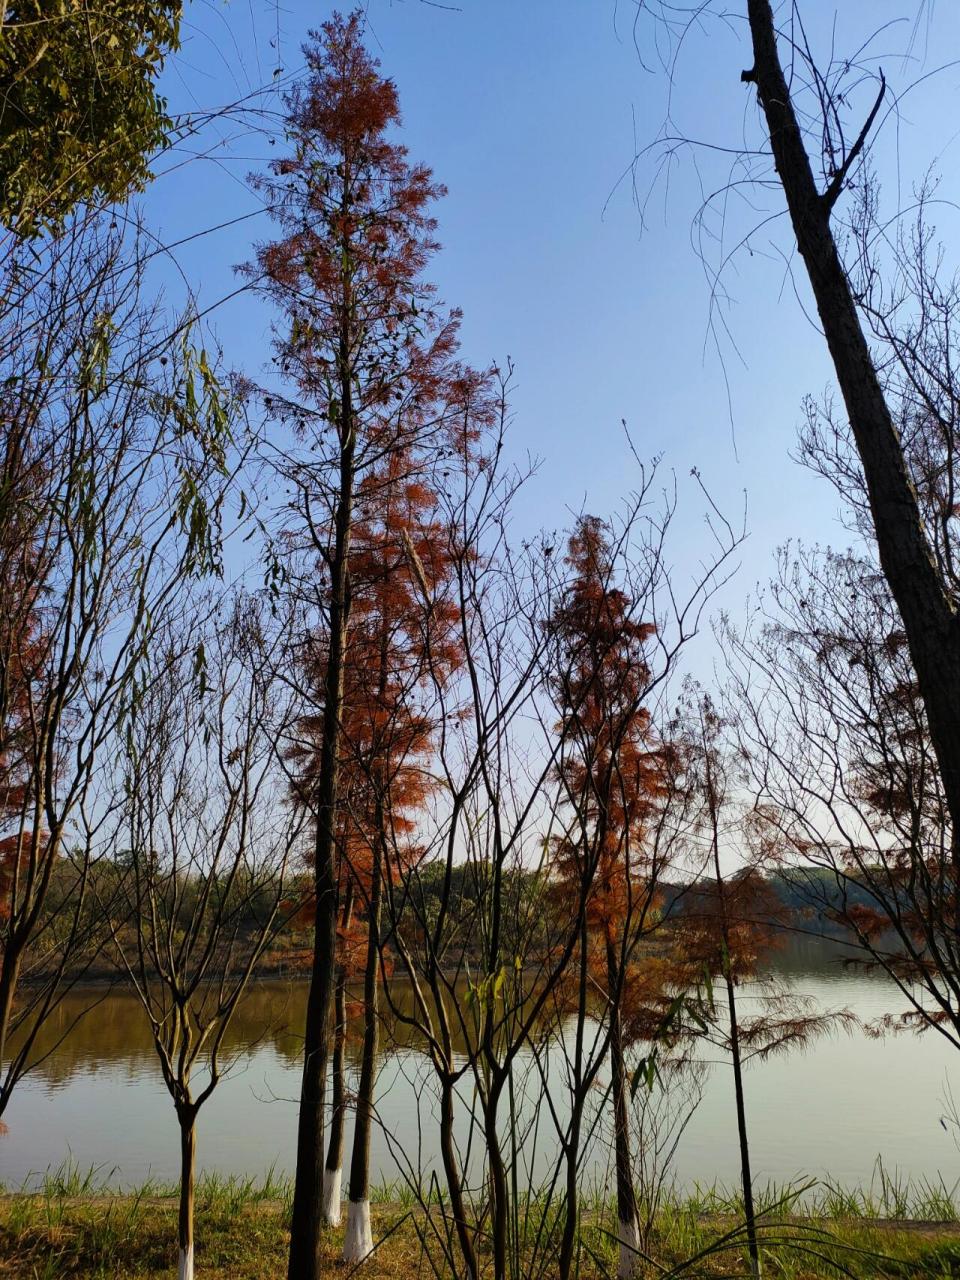 龙泉驿青龙湖湿地公园图片